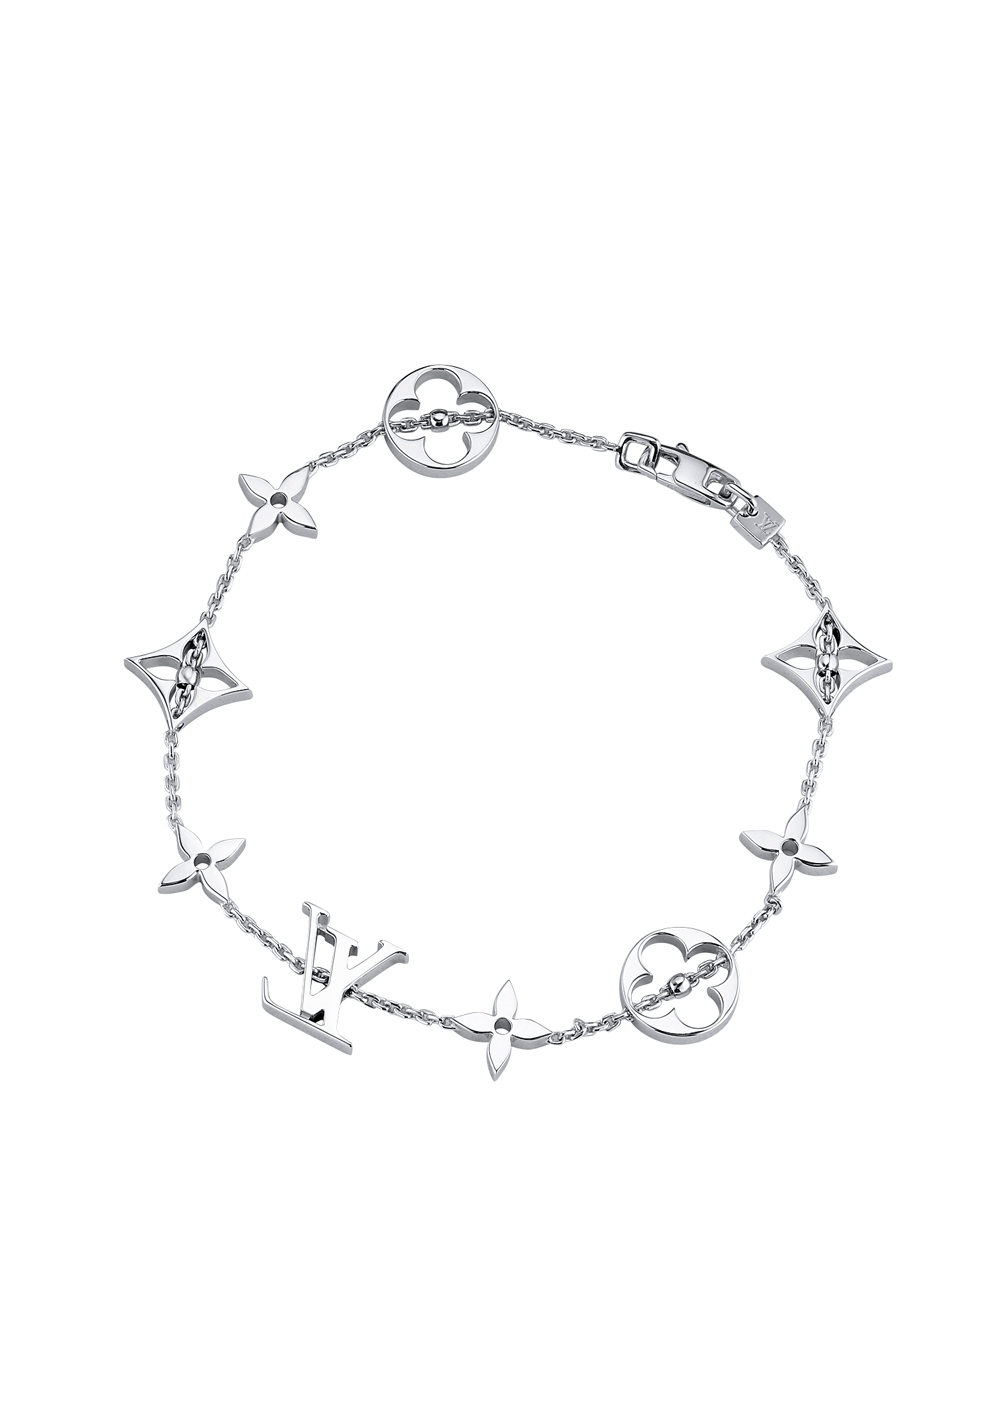 Shop Louis Vuitton Lv iconic bracelet (M00587) by BeBeauty